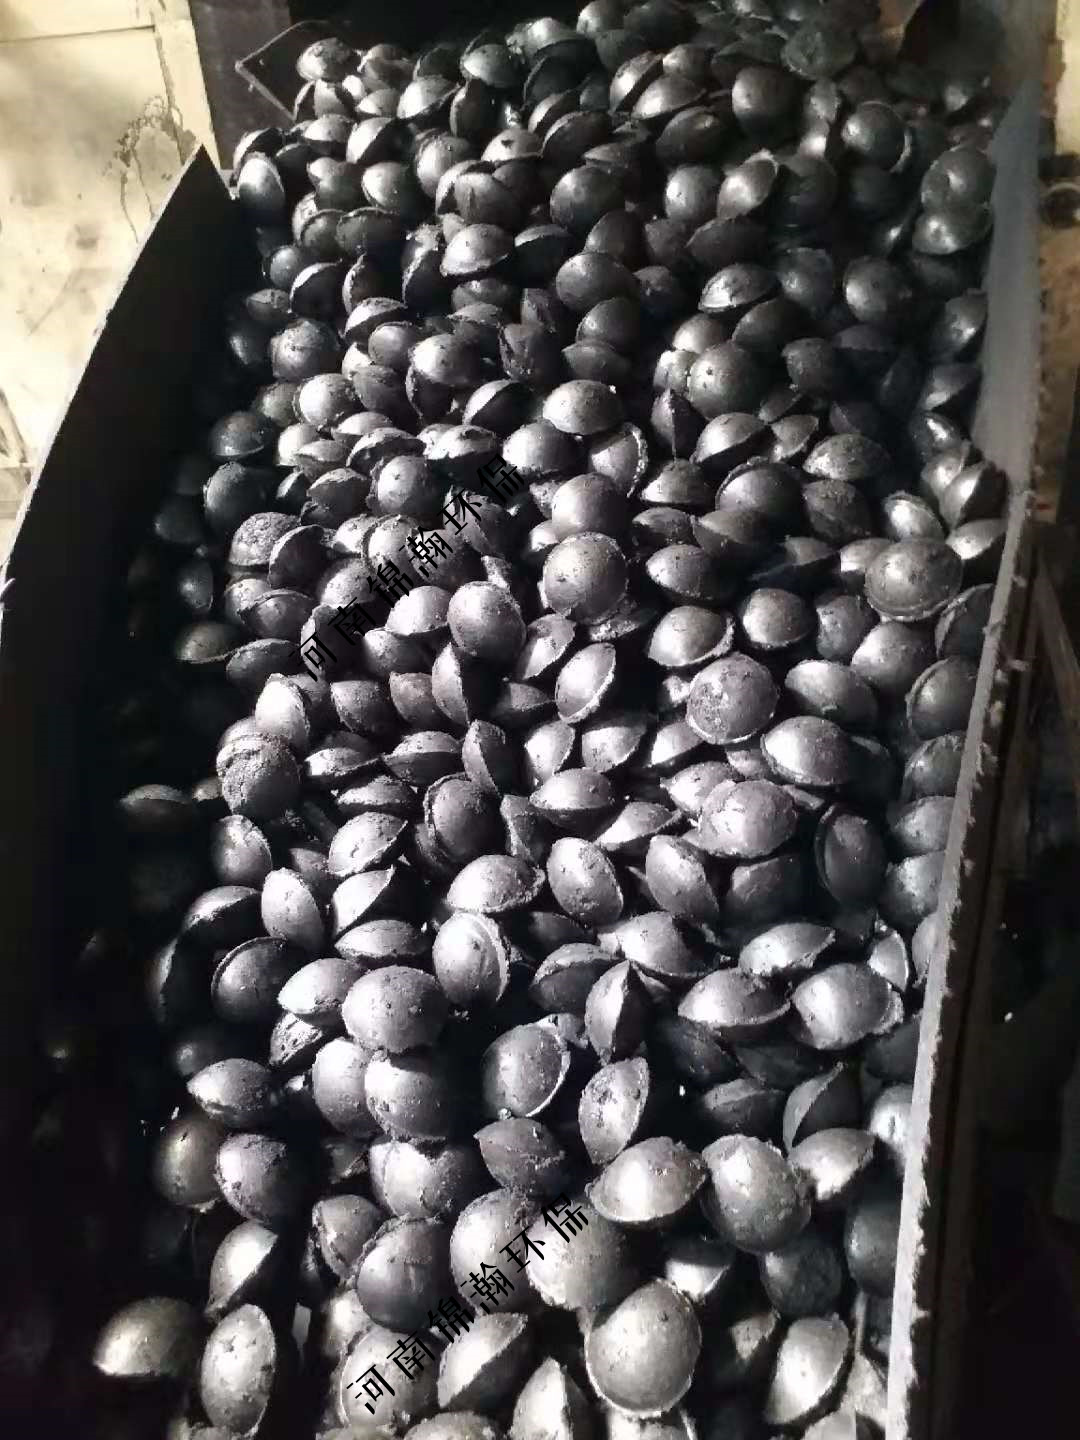 型煤粘合剂  型煤粘合剂石灰窑型煤粘合剂 型煤粘合剂石灰窑型煤粘合剂工业型